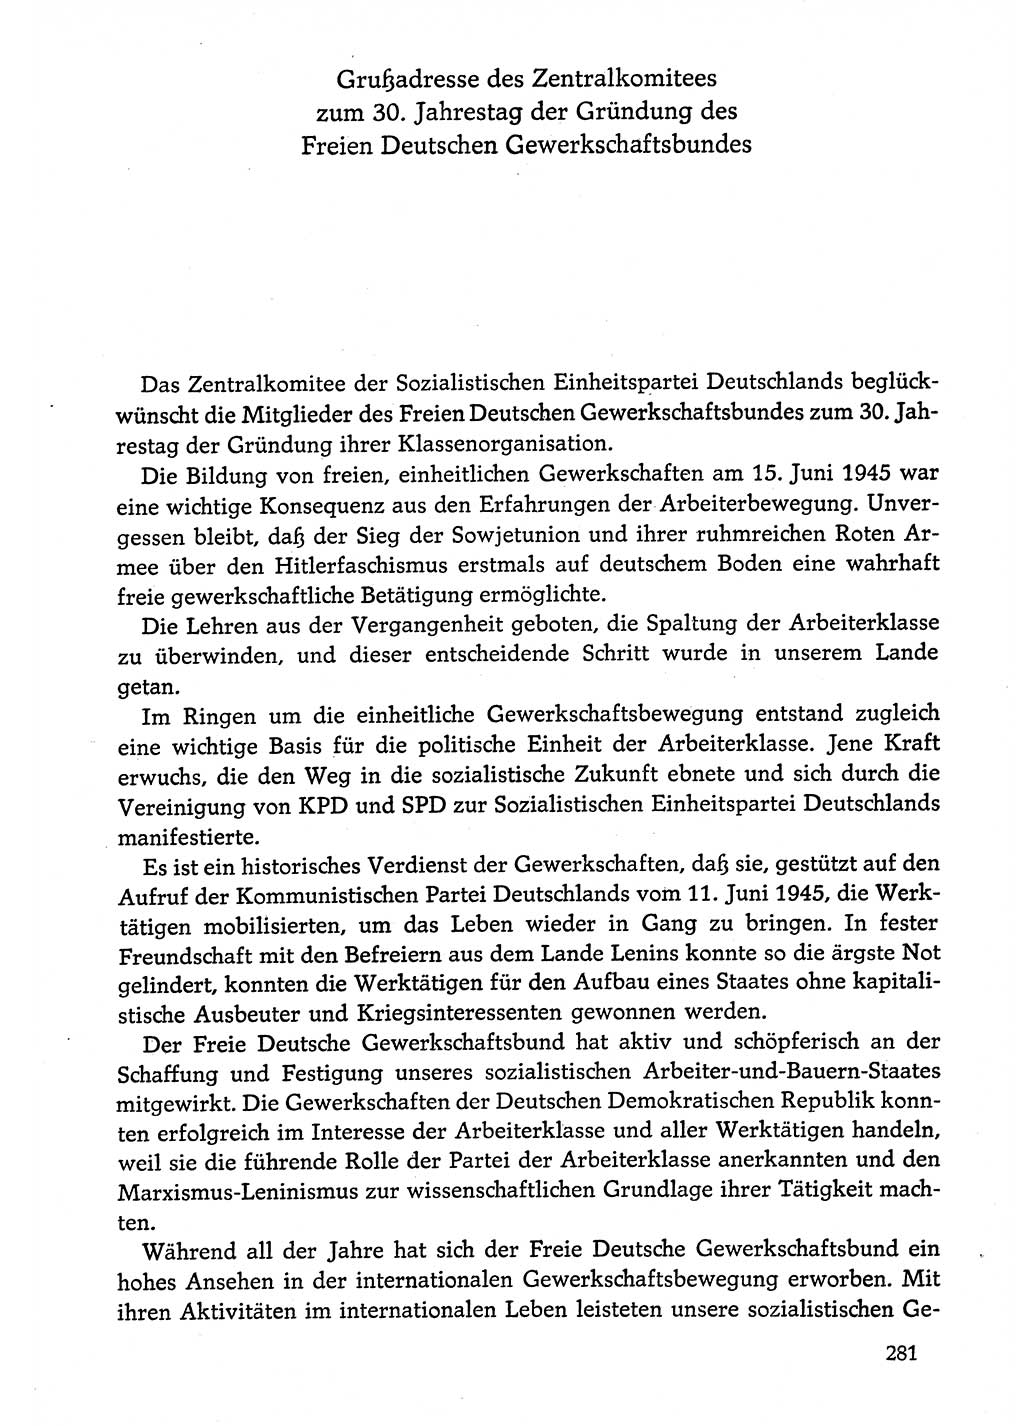 Dokumente der Sozialistischen Einheitspartei Deutschlands (SED) [Deutsche Demokratische Republik (DDR)] 1974-1975, Seite 281 (Dok. SED DDR 1978, Bd. ⅩⅤ, S. 281)